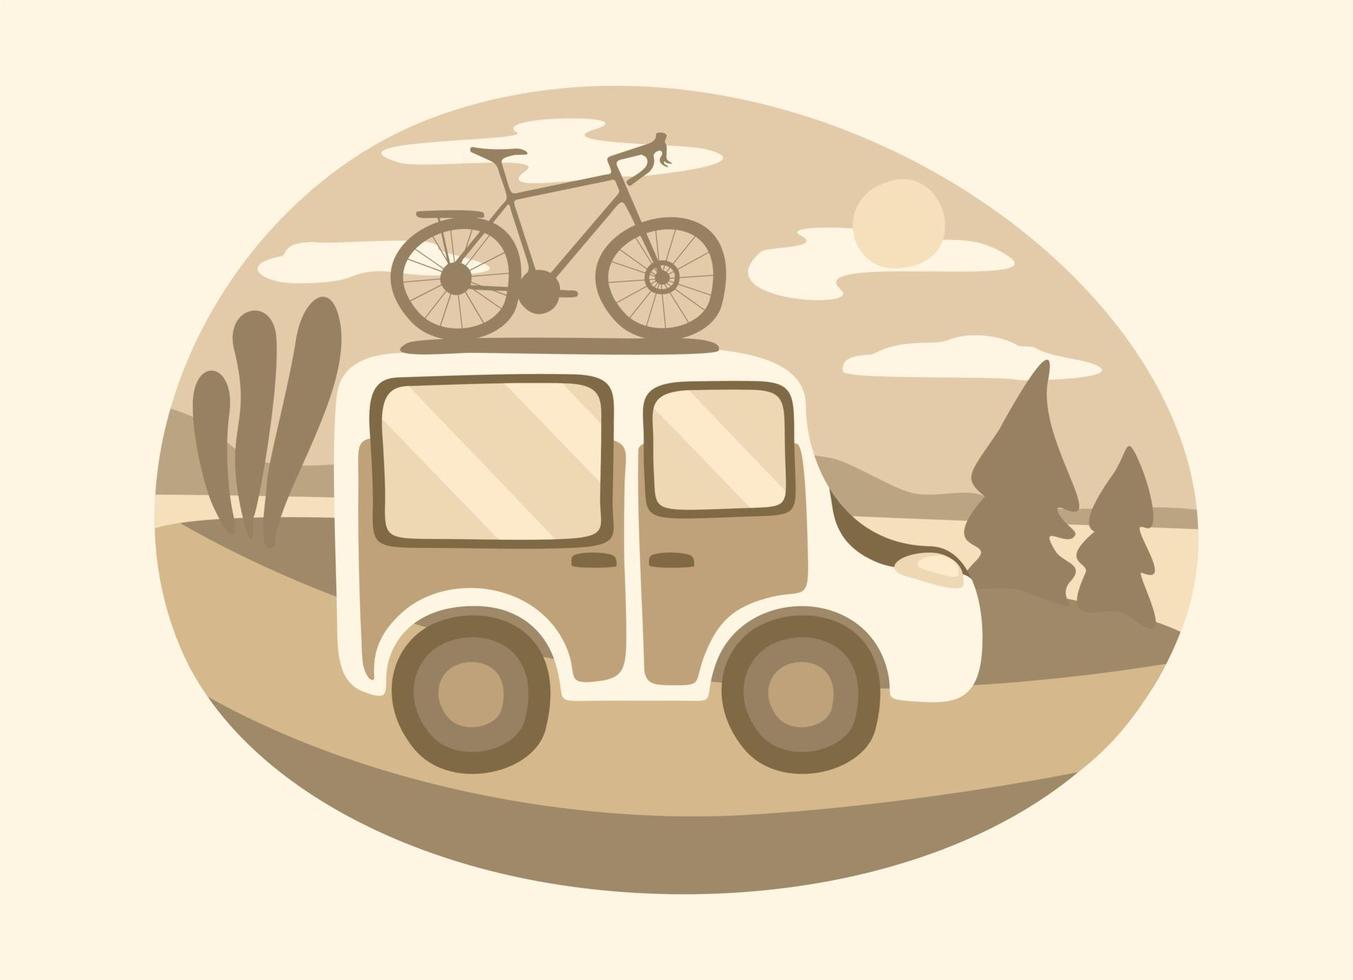 Reise-Minivan mit Fahrrad auf der Oberseite. Familiensommerreisekonzept. ländliche Landschaft um. monochrome Sepia-Komposition. vektor